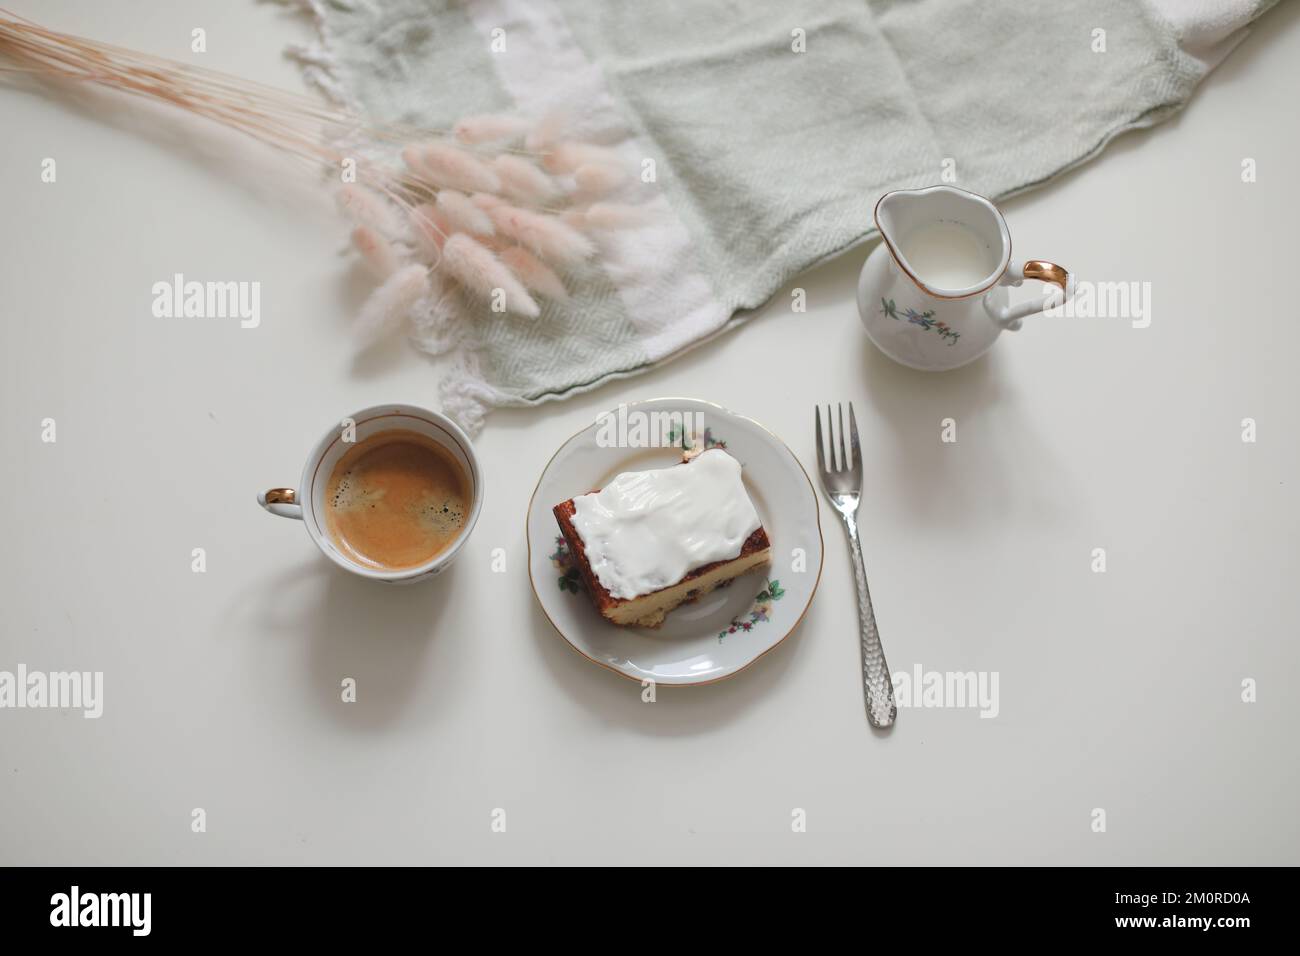 colazione con una tazza di caffè e una brocca di latte su uno sfondo di legno bianco, primo piano. Colazione energetica, concetto di routine mattutina Foto Stock